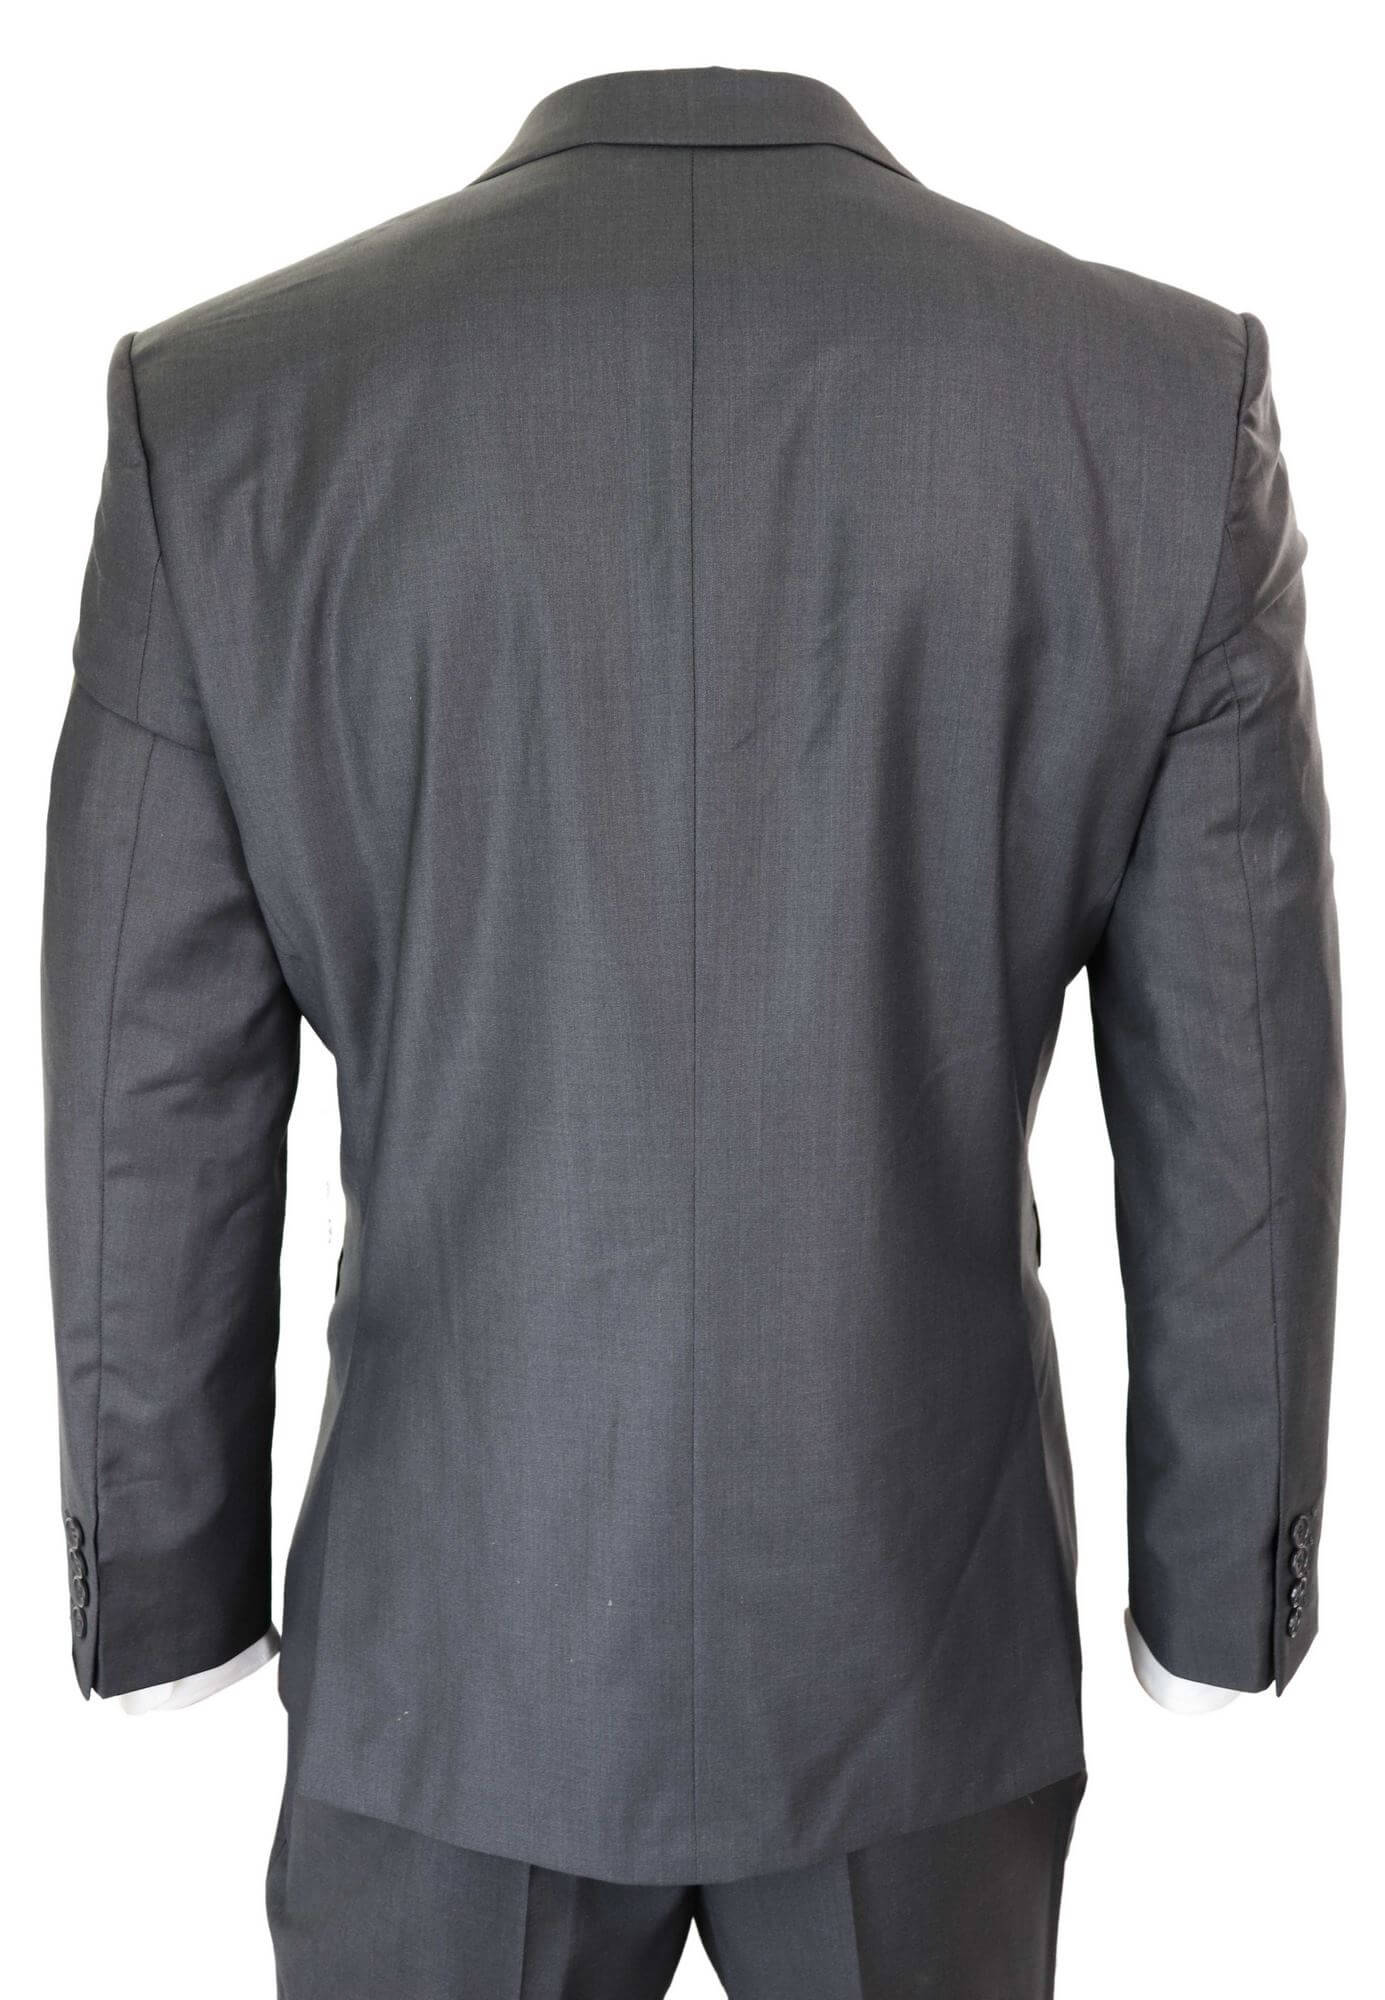 Mens Grey Wool Formal Suit: Buy Online - Happy Gentleman United States